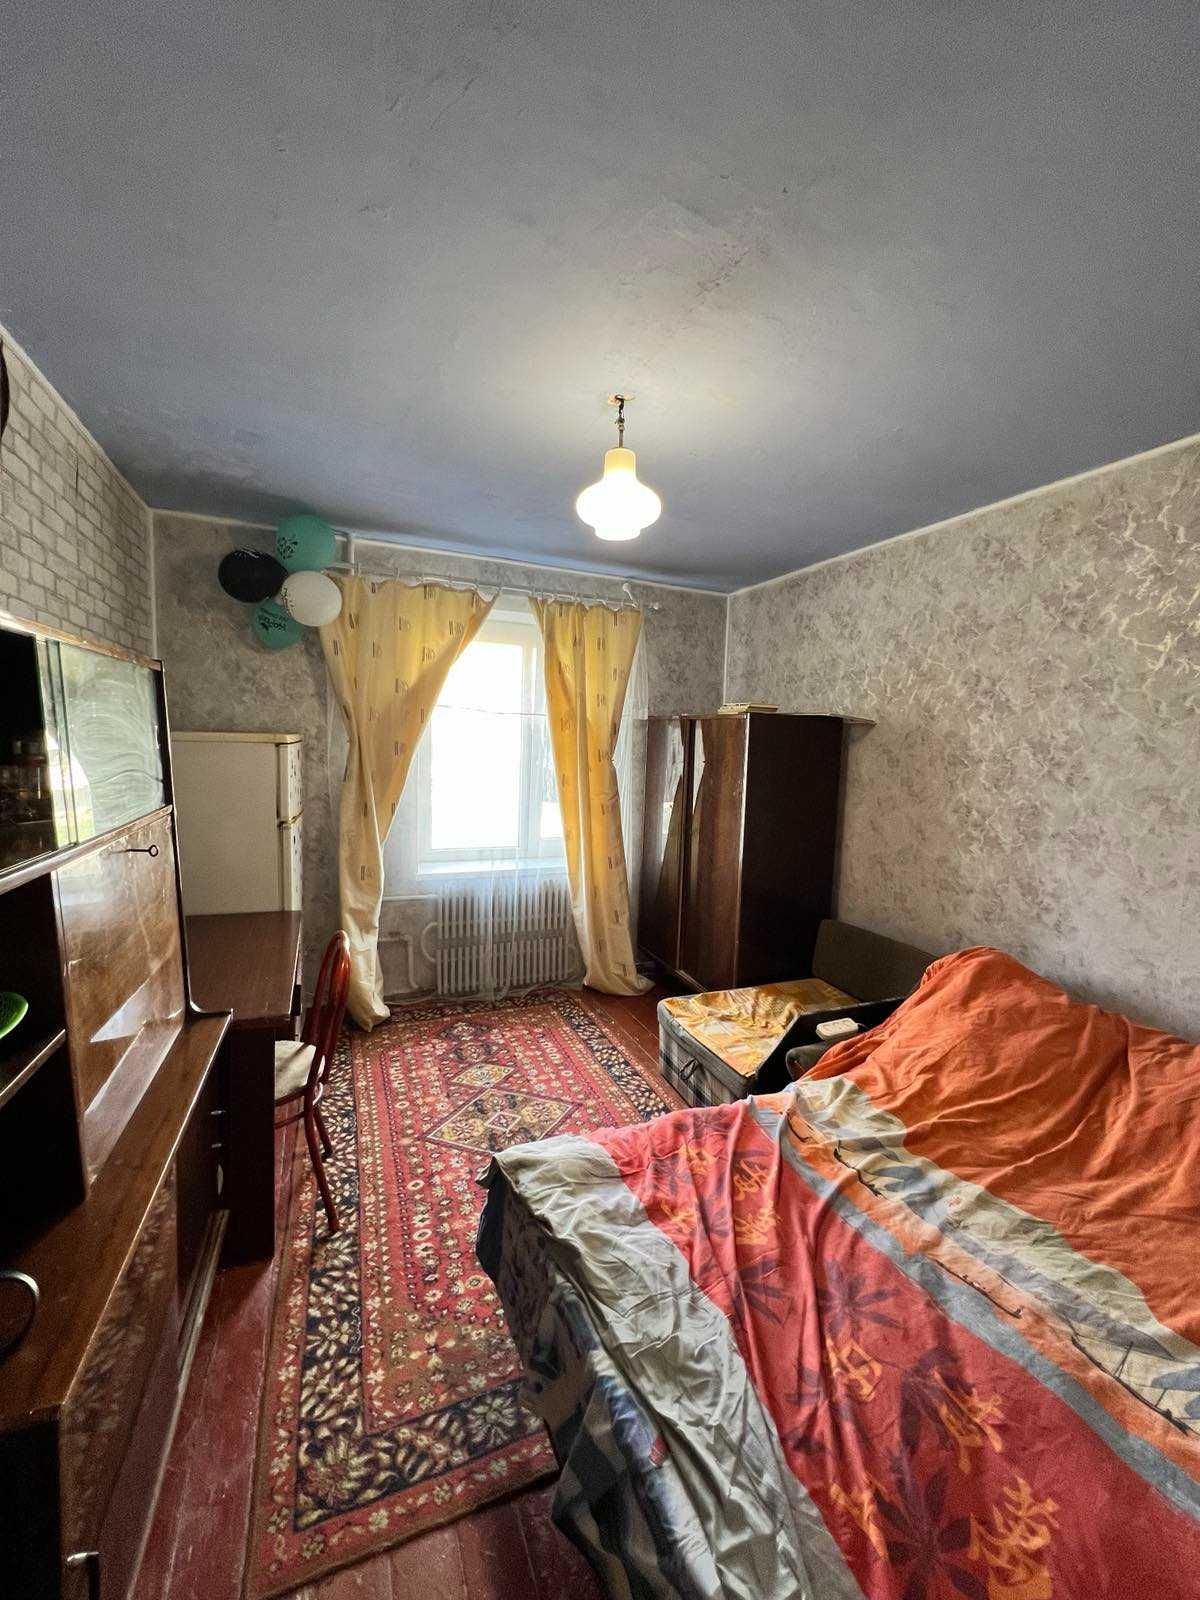 Продам комнату 11,5 метров, прям возле ТРК Украина, хорошее состояние!